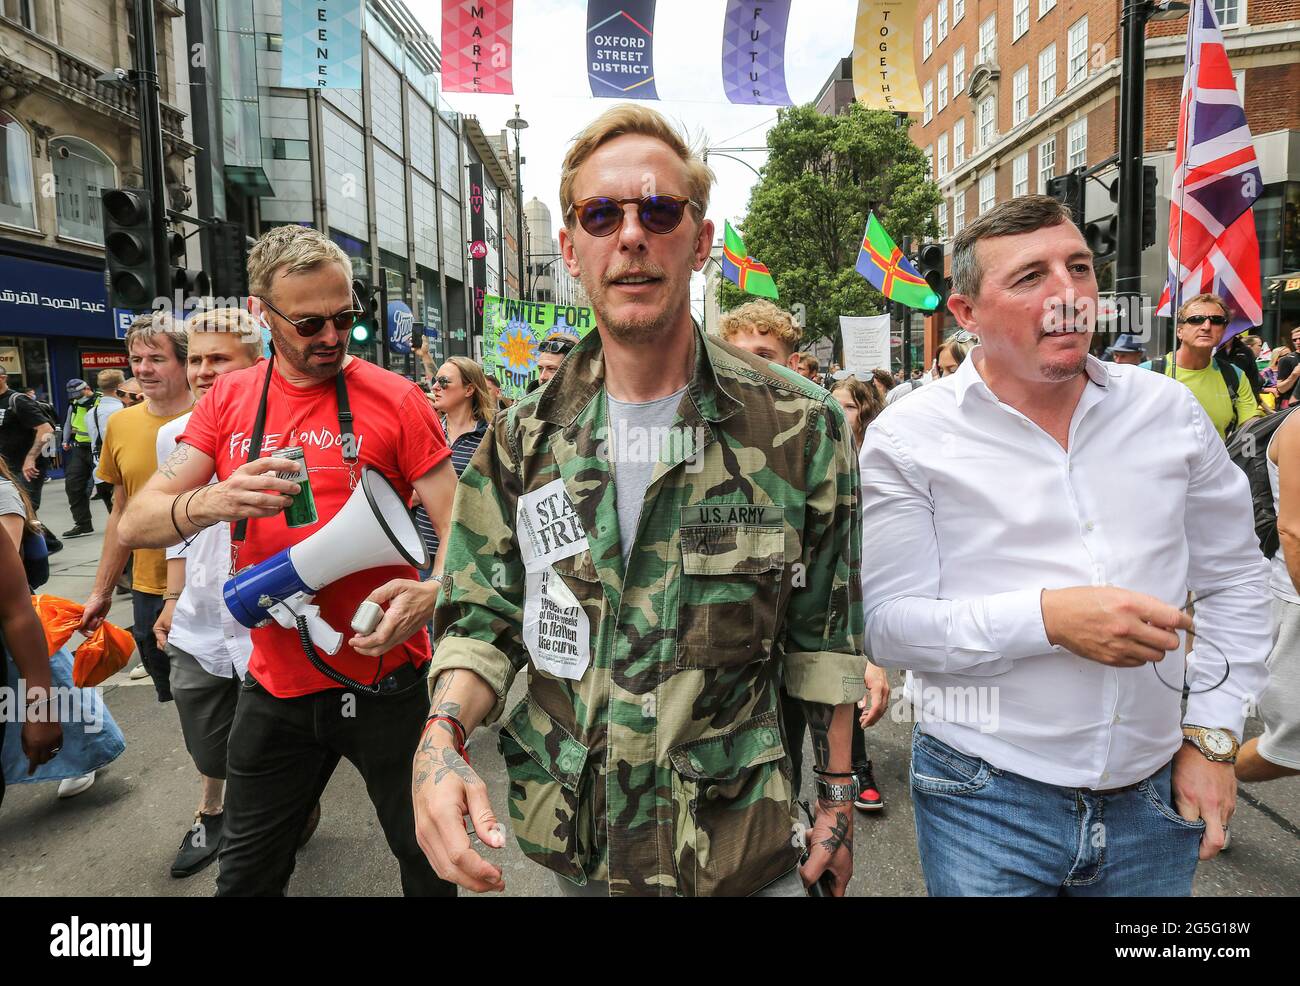 Acteur et fondateur du parti Requim, Laurence Fox marche à Oxford Street, alors que des milliers de manifestants pour la liberté demandent la fin des restrictions de la COVID-19, Londres. Banque D'Images